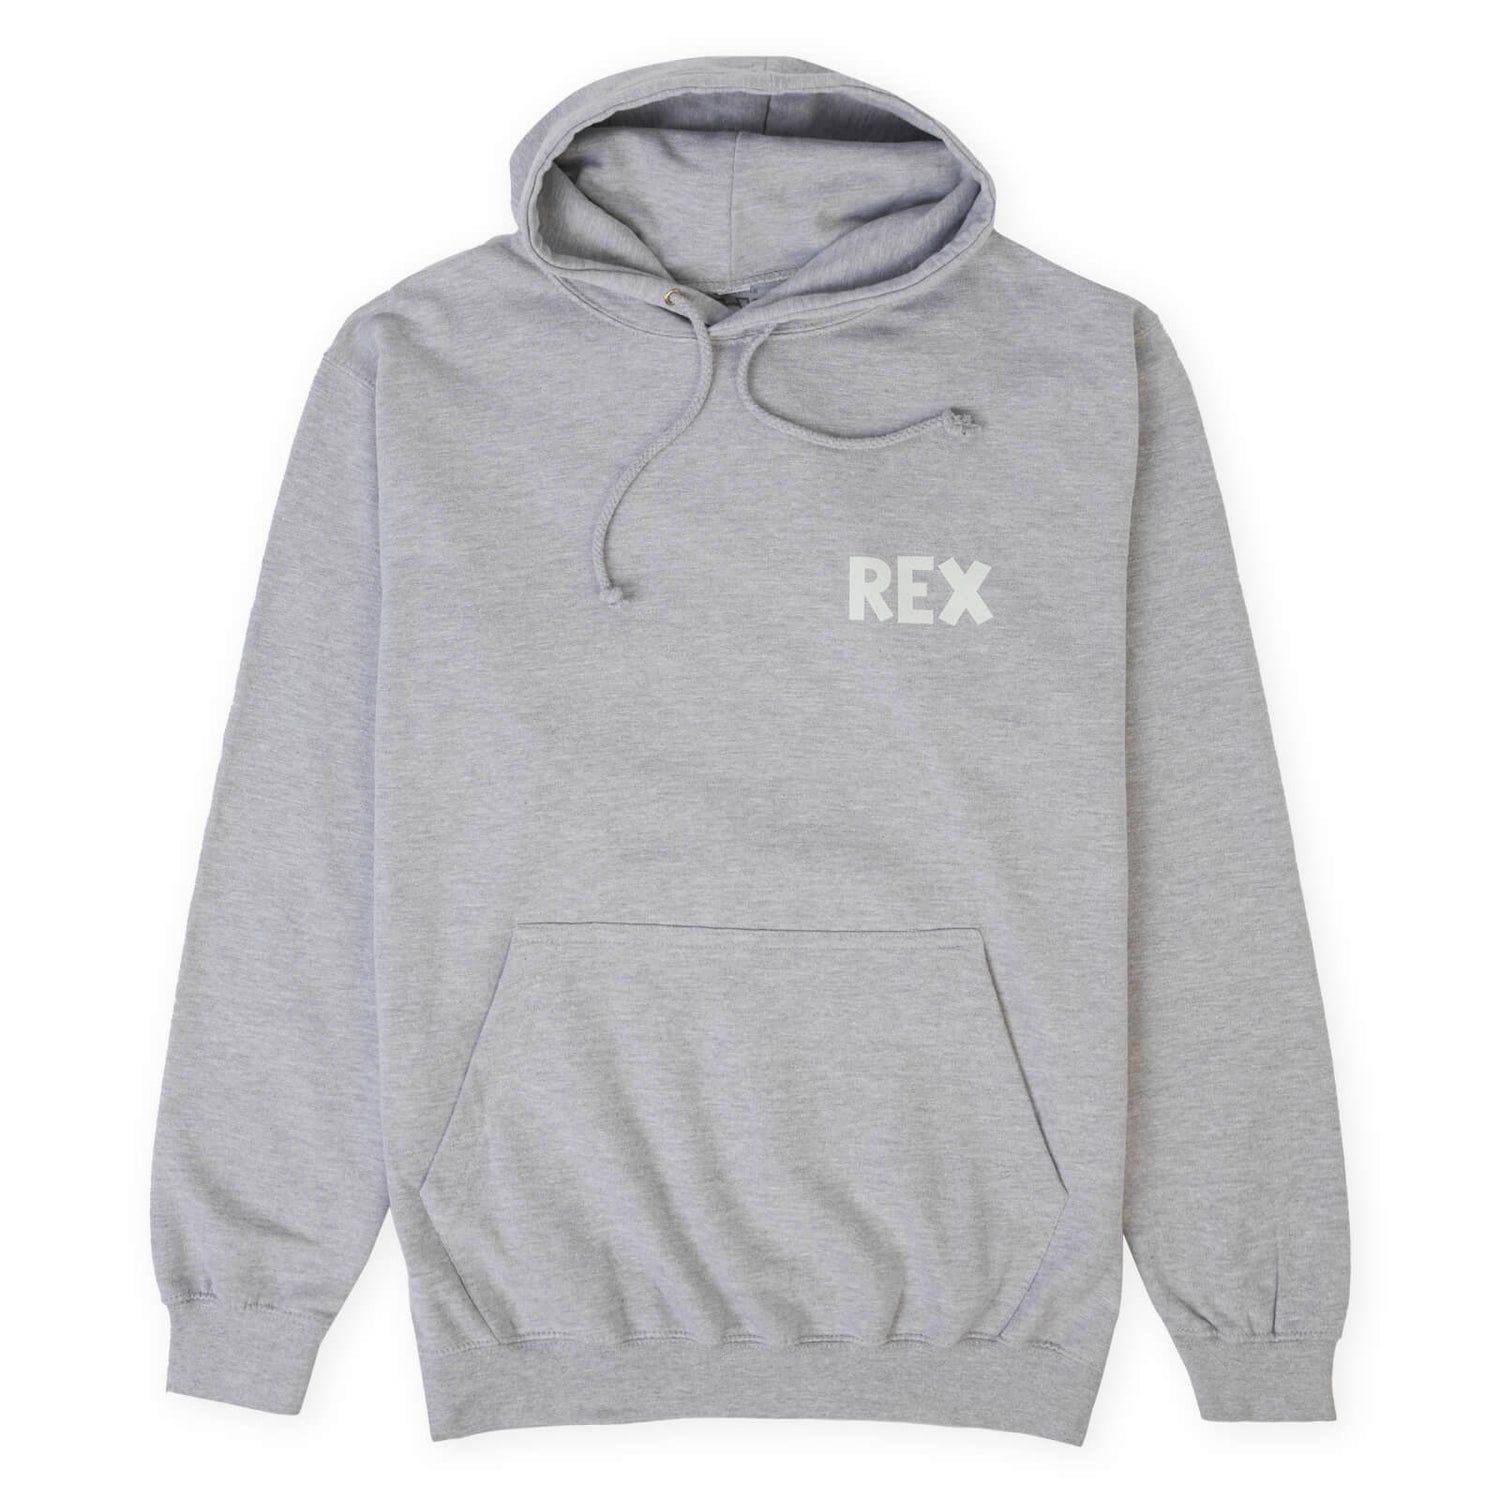 Rex Roar Unisex Hoodie - Grey